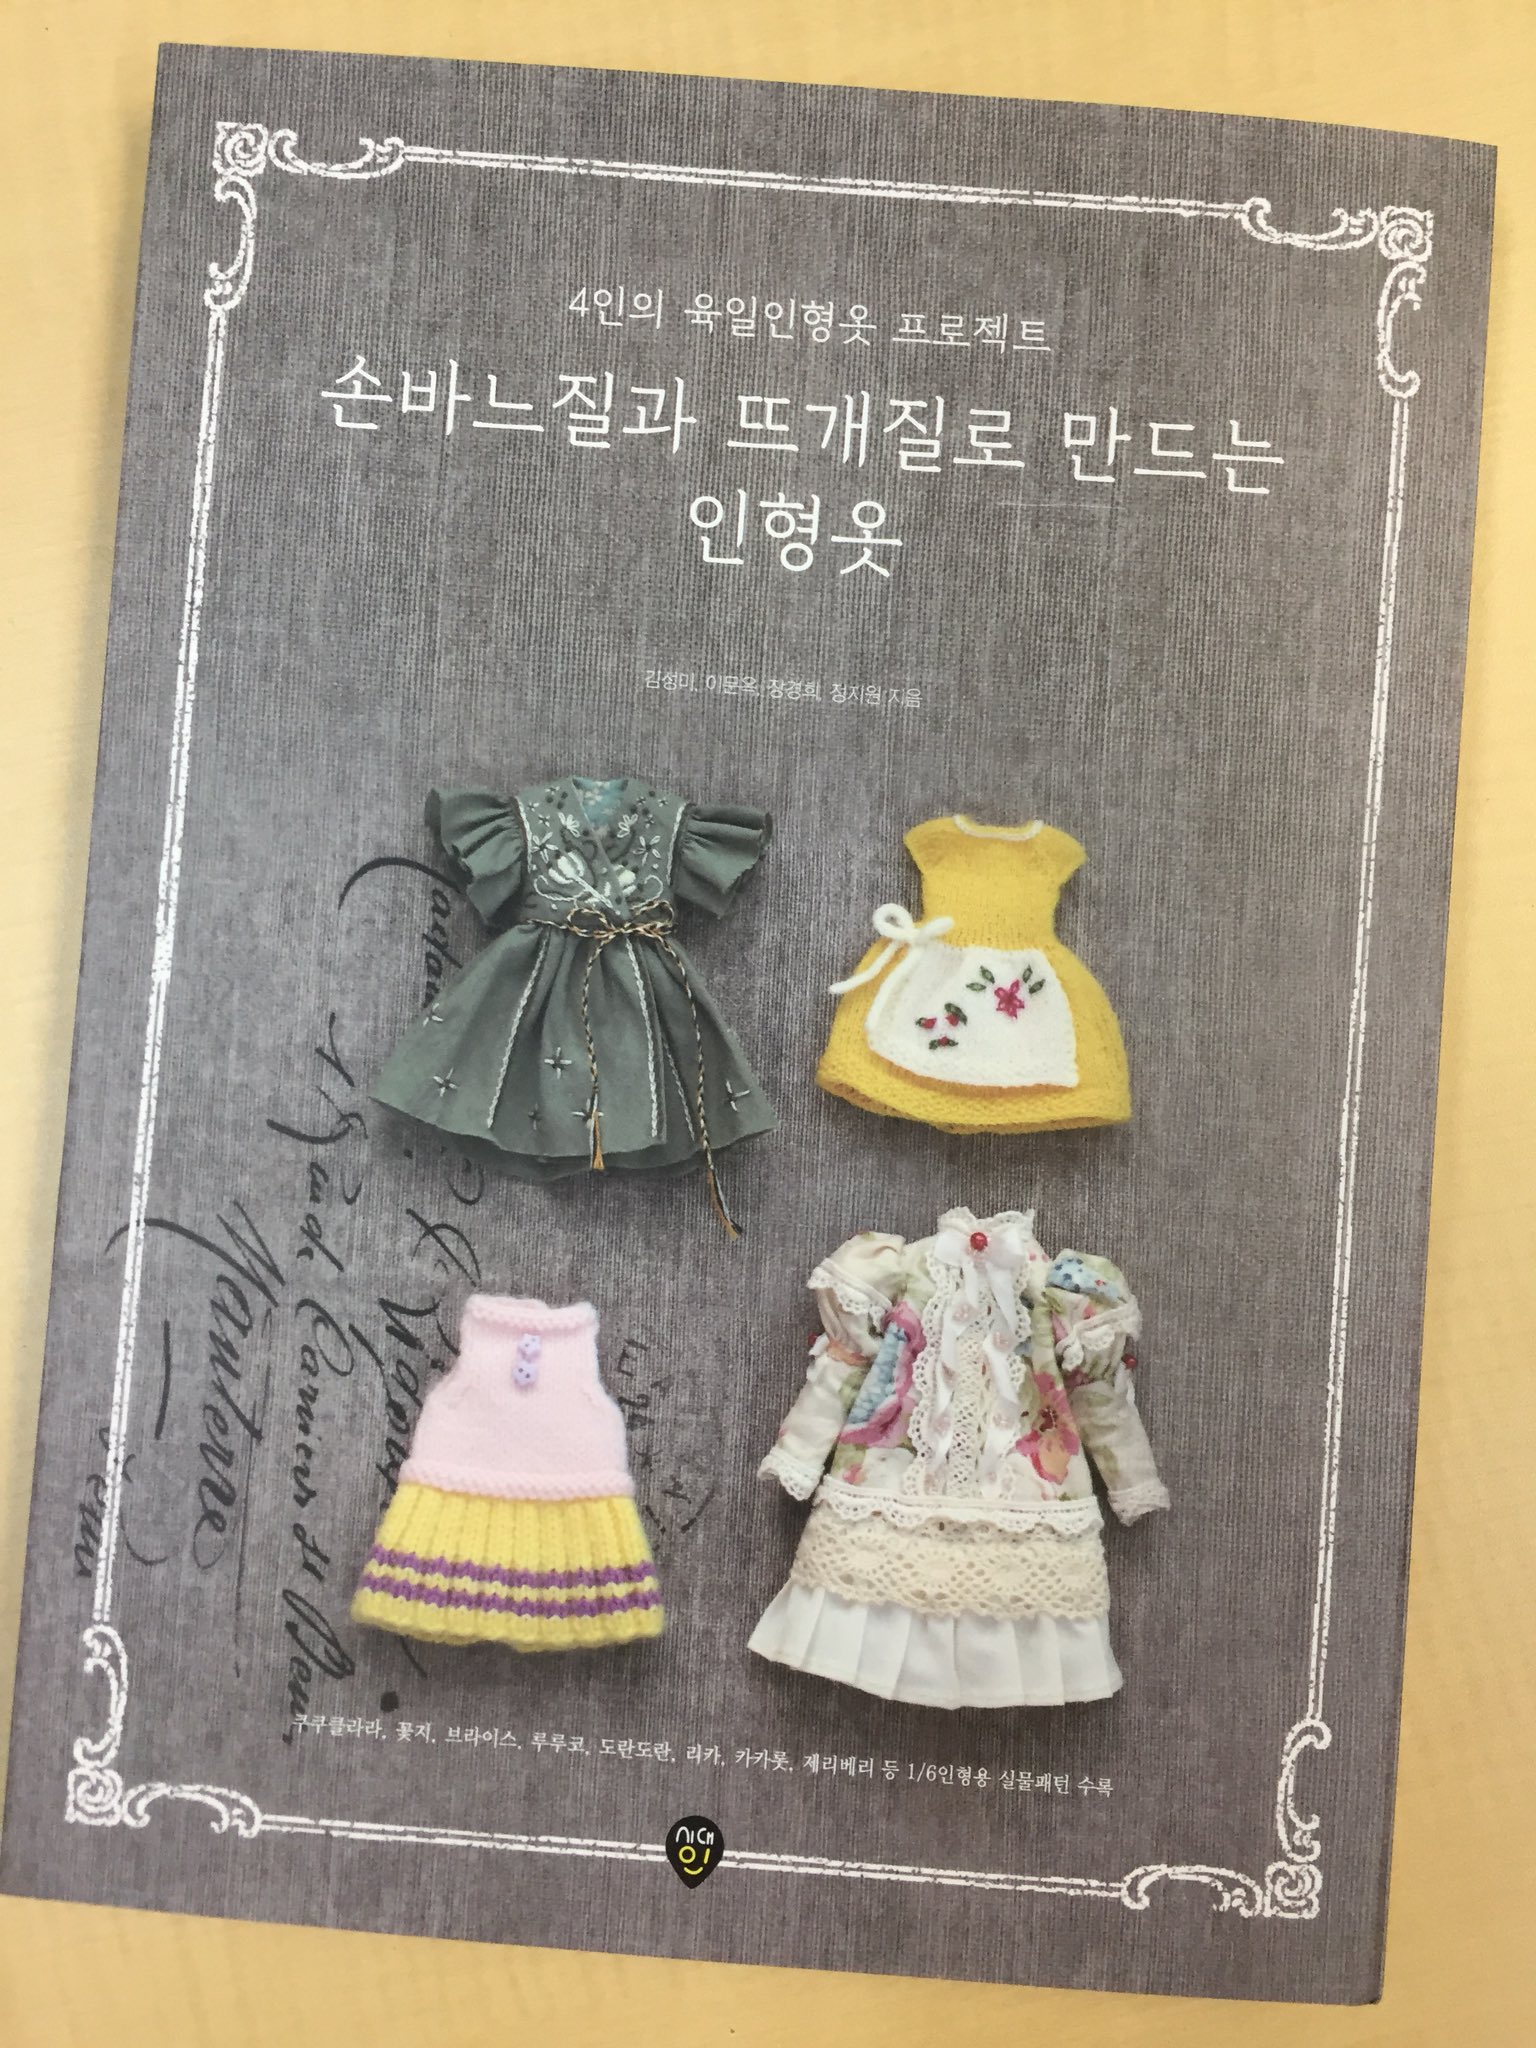 真鍋奈見江petworks Twitterren 韓国のドール服本に Ruruko を掲載していただきました 韓国の可愛い1 6ドールさんたちと 224pもある厚い本です